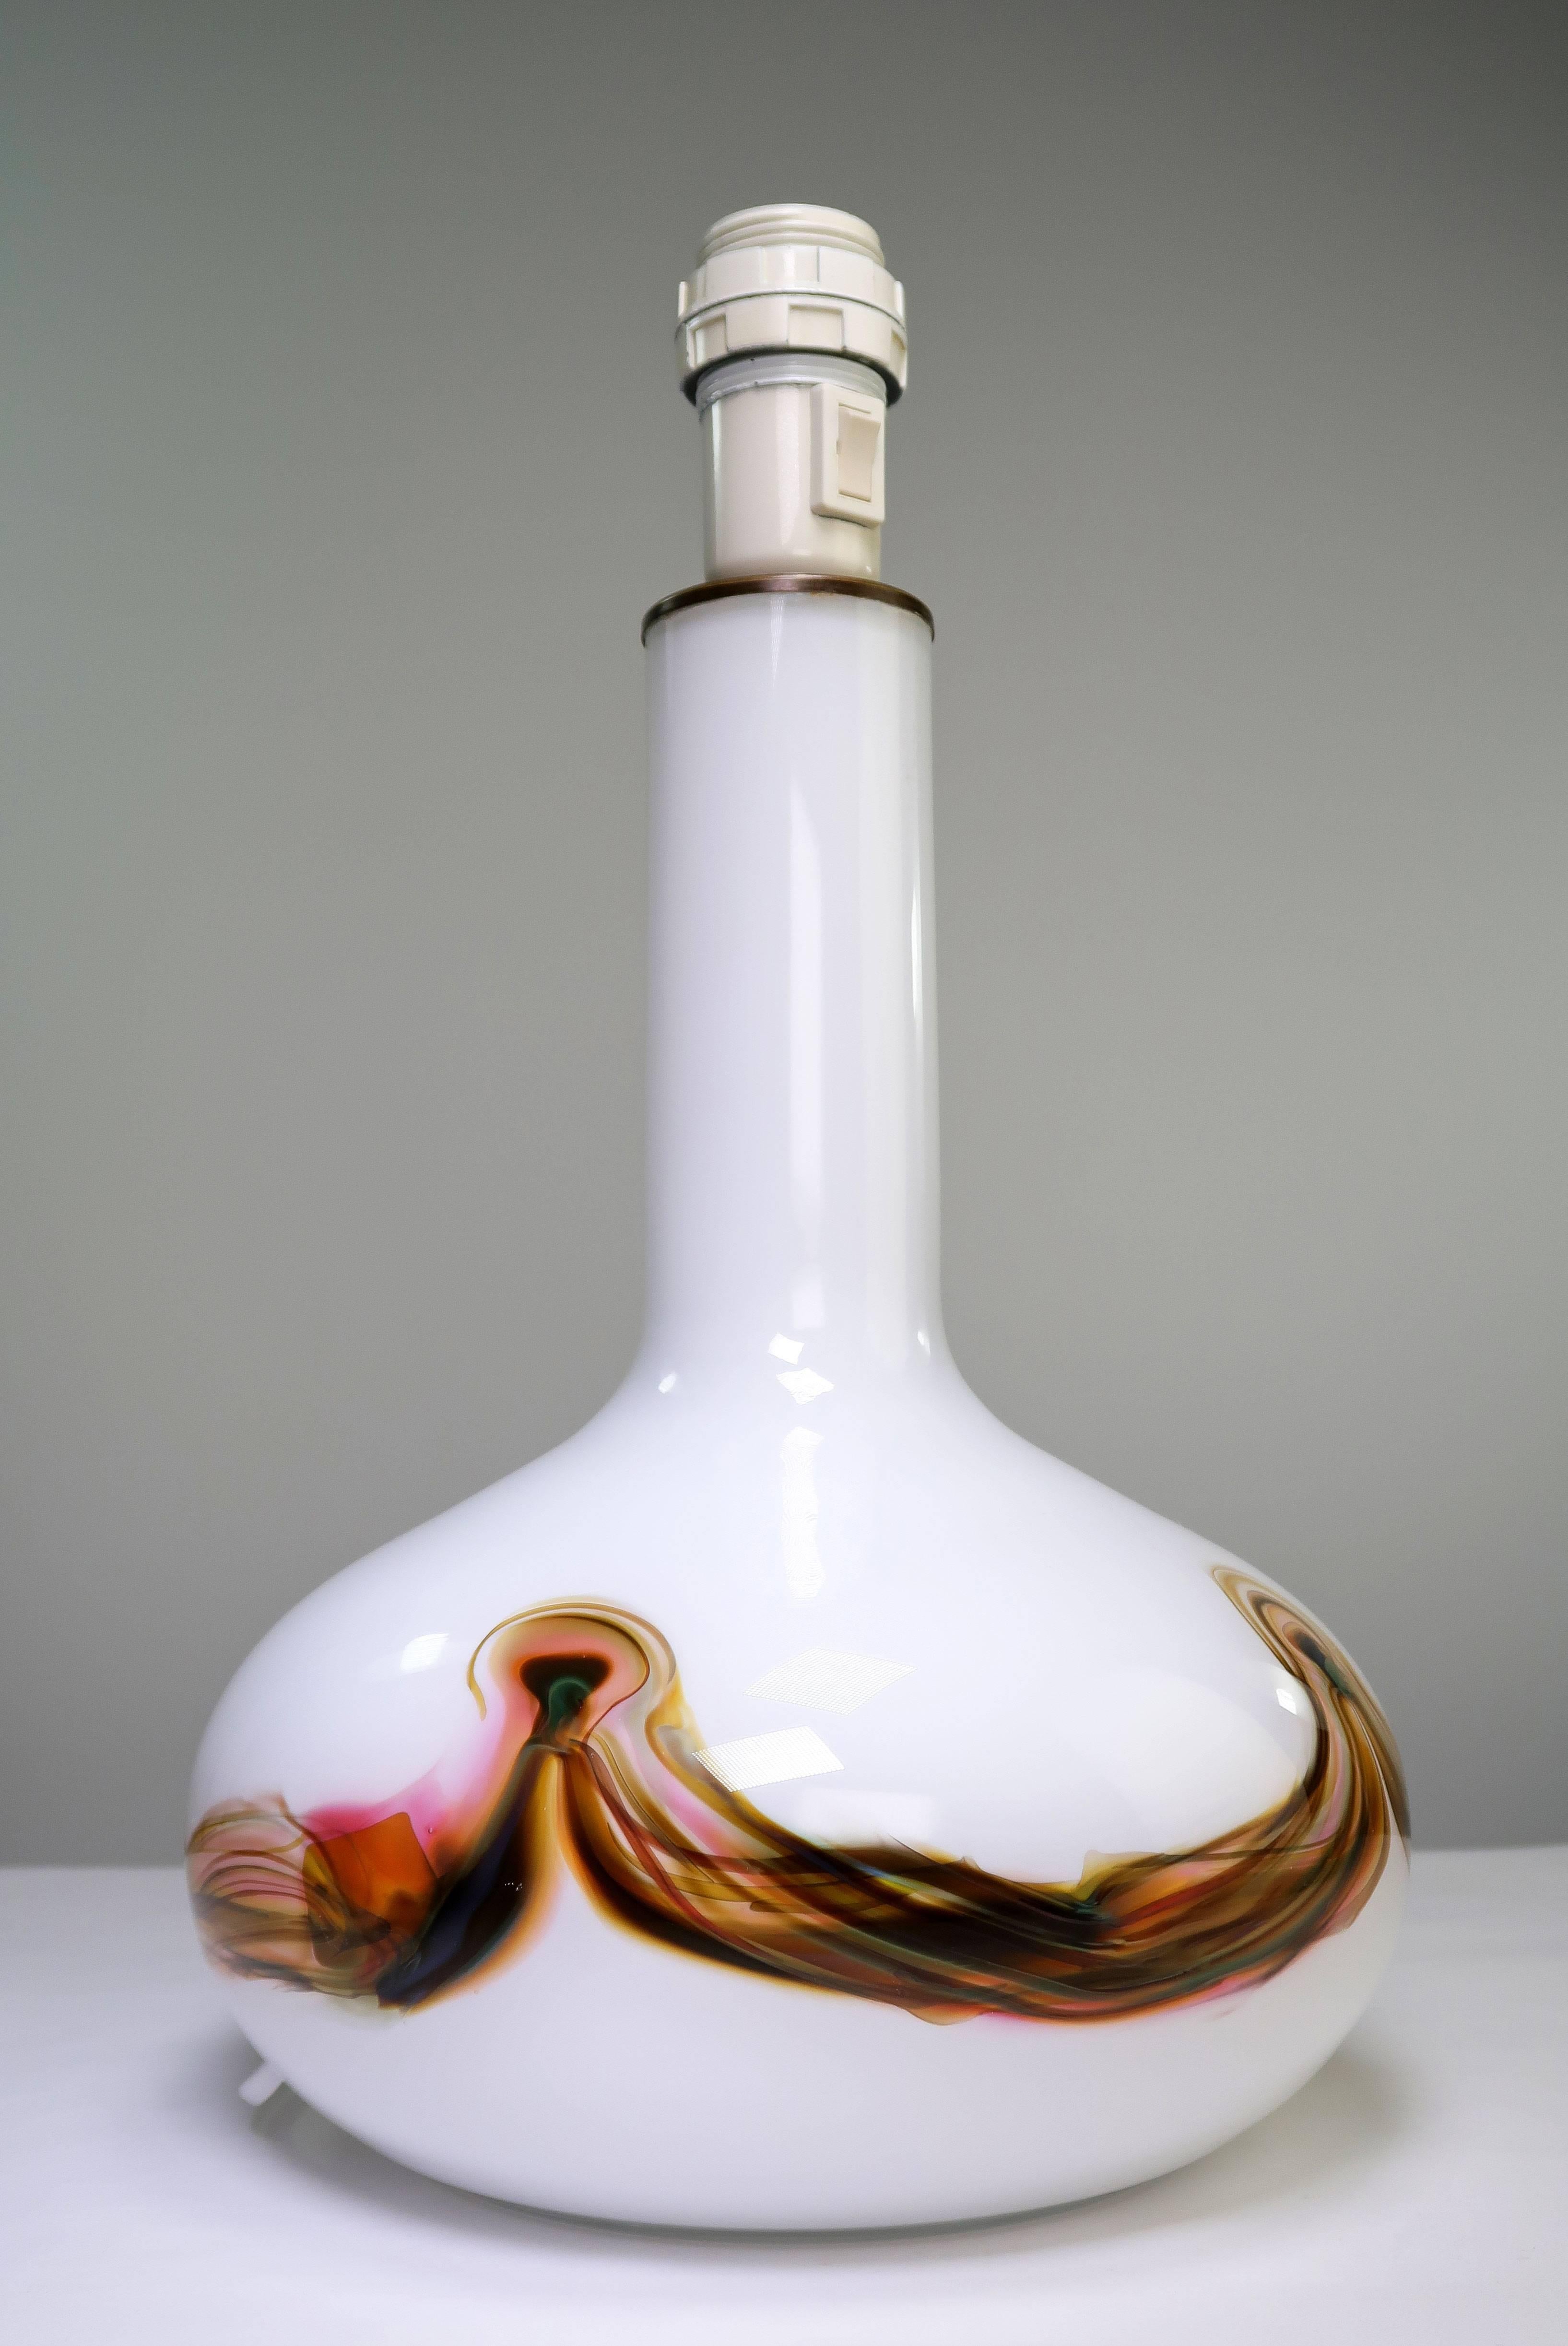 Grande lampe de table moderne danoise en verre d'art opalin, conçue par Per Lütken pour Holmegaard dans les années 1970. Verre opalin blanc osseux avec un décor fumé en rose diaphane, rouge, jaune, brun et bleu autour de la panse - un motif unique